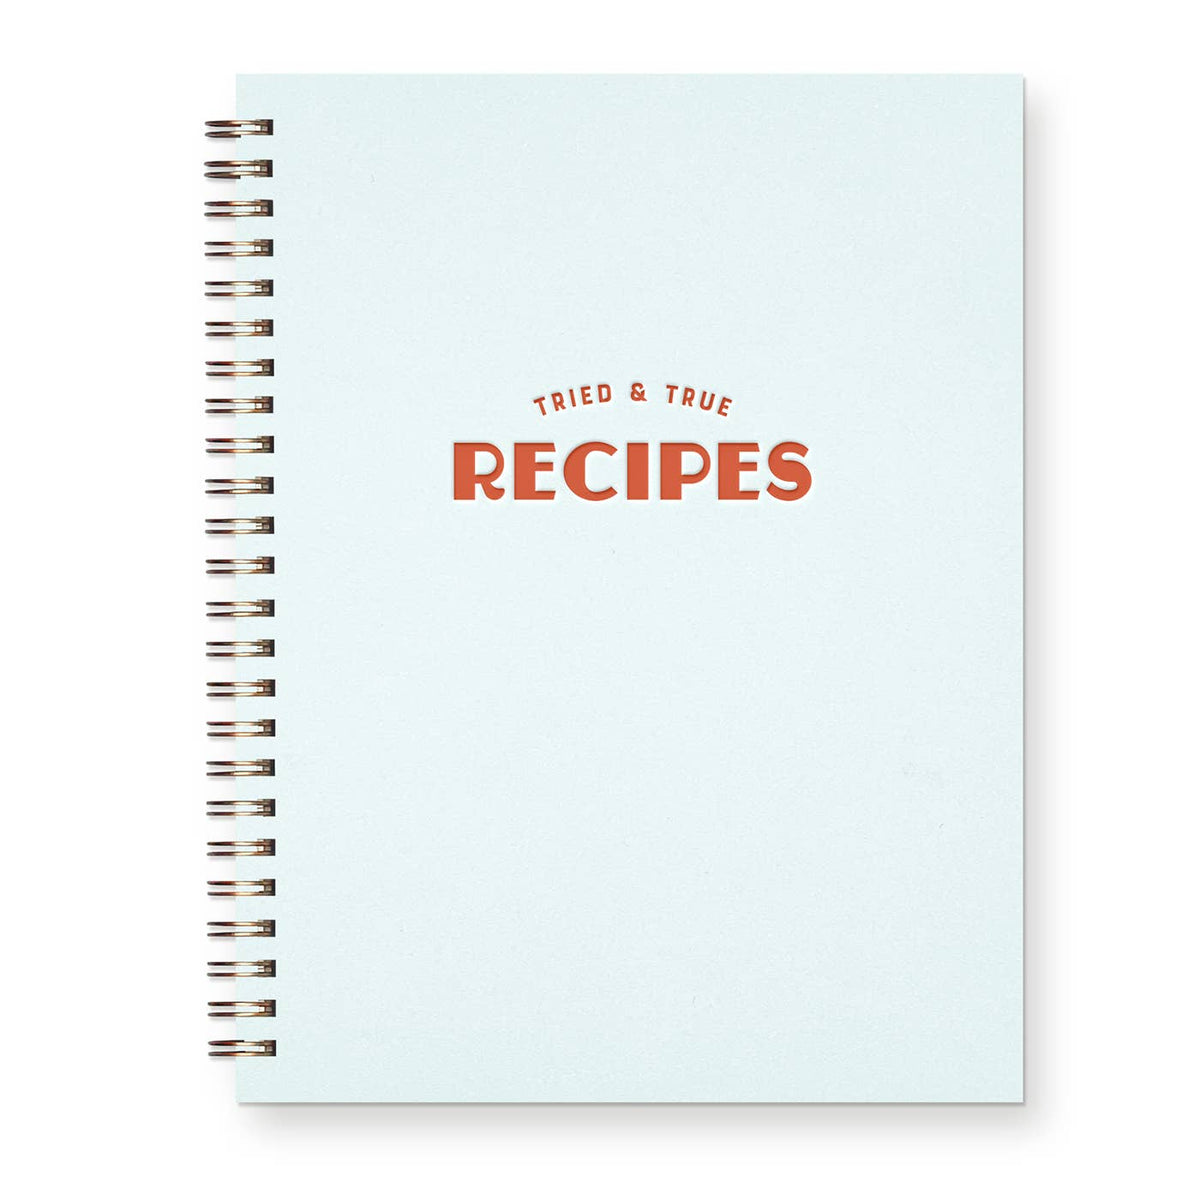 Ruff House Print Shop - Tried & True Recipes Book